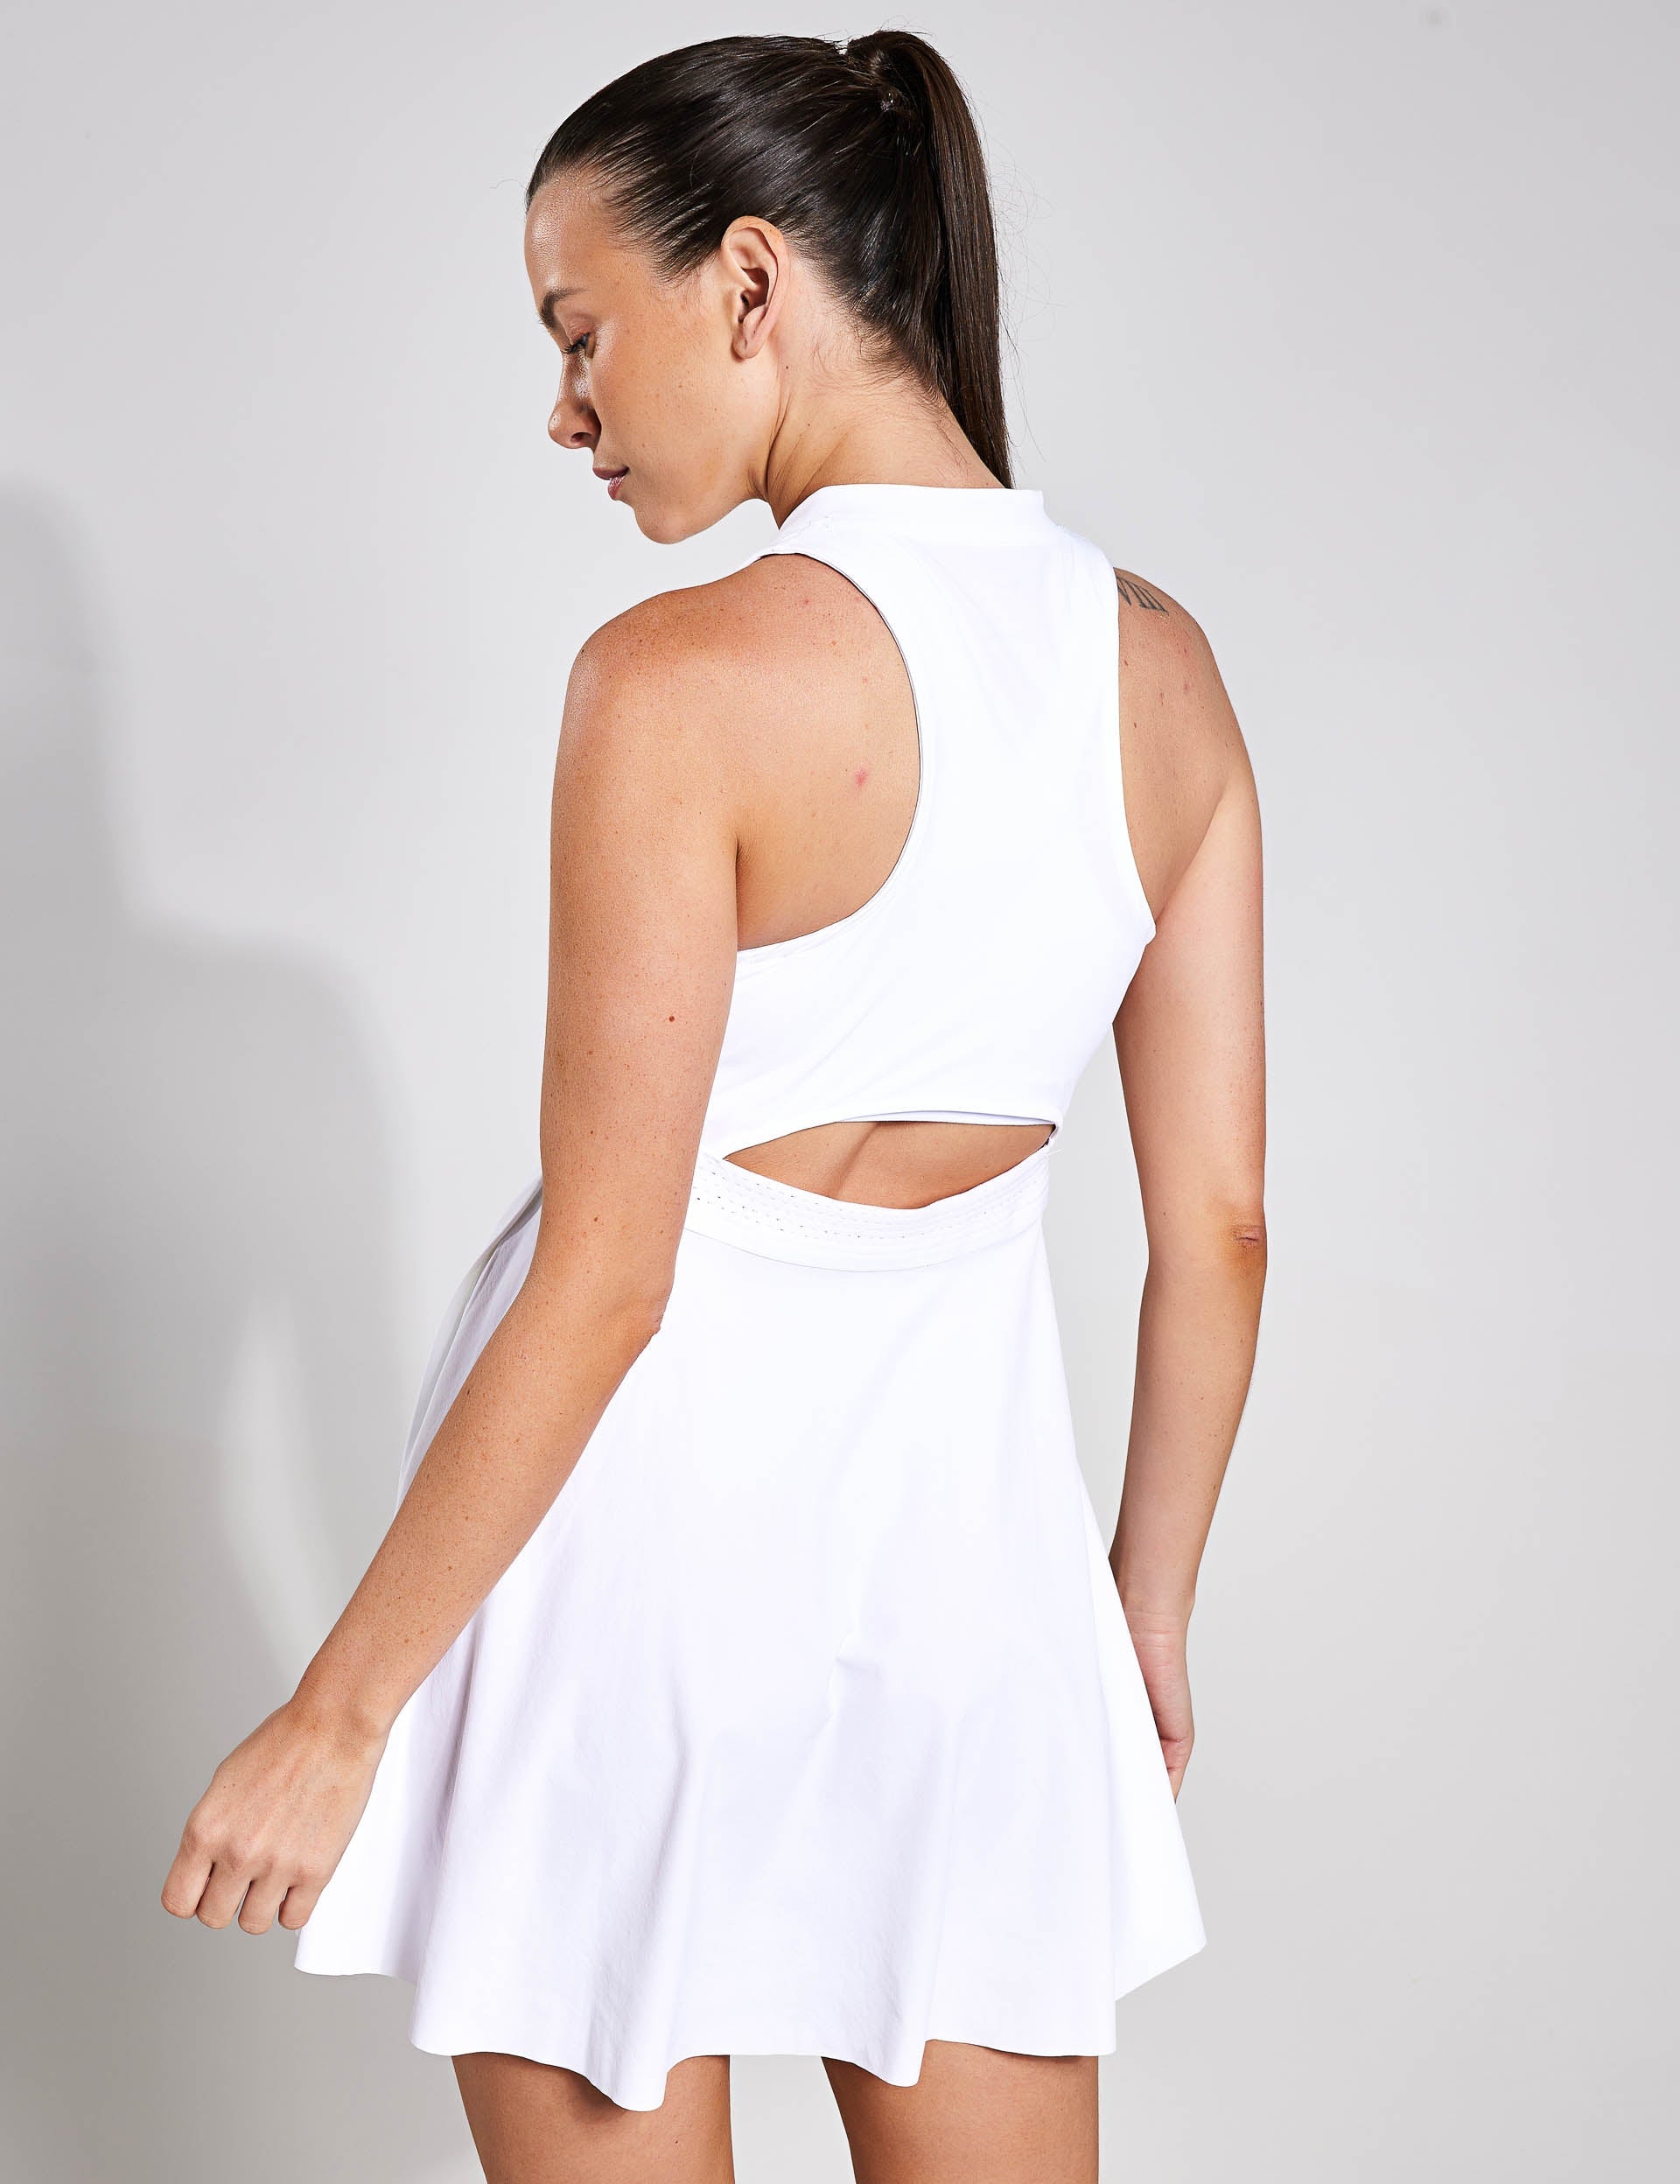 Nike, Dri-FIT Advantage Tennis Dress - White/Black